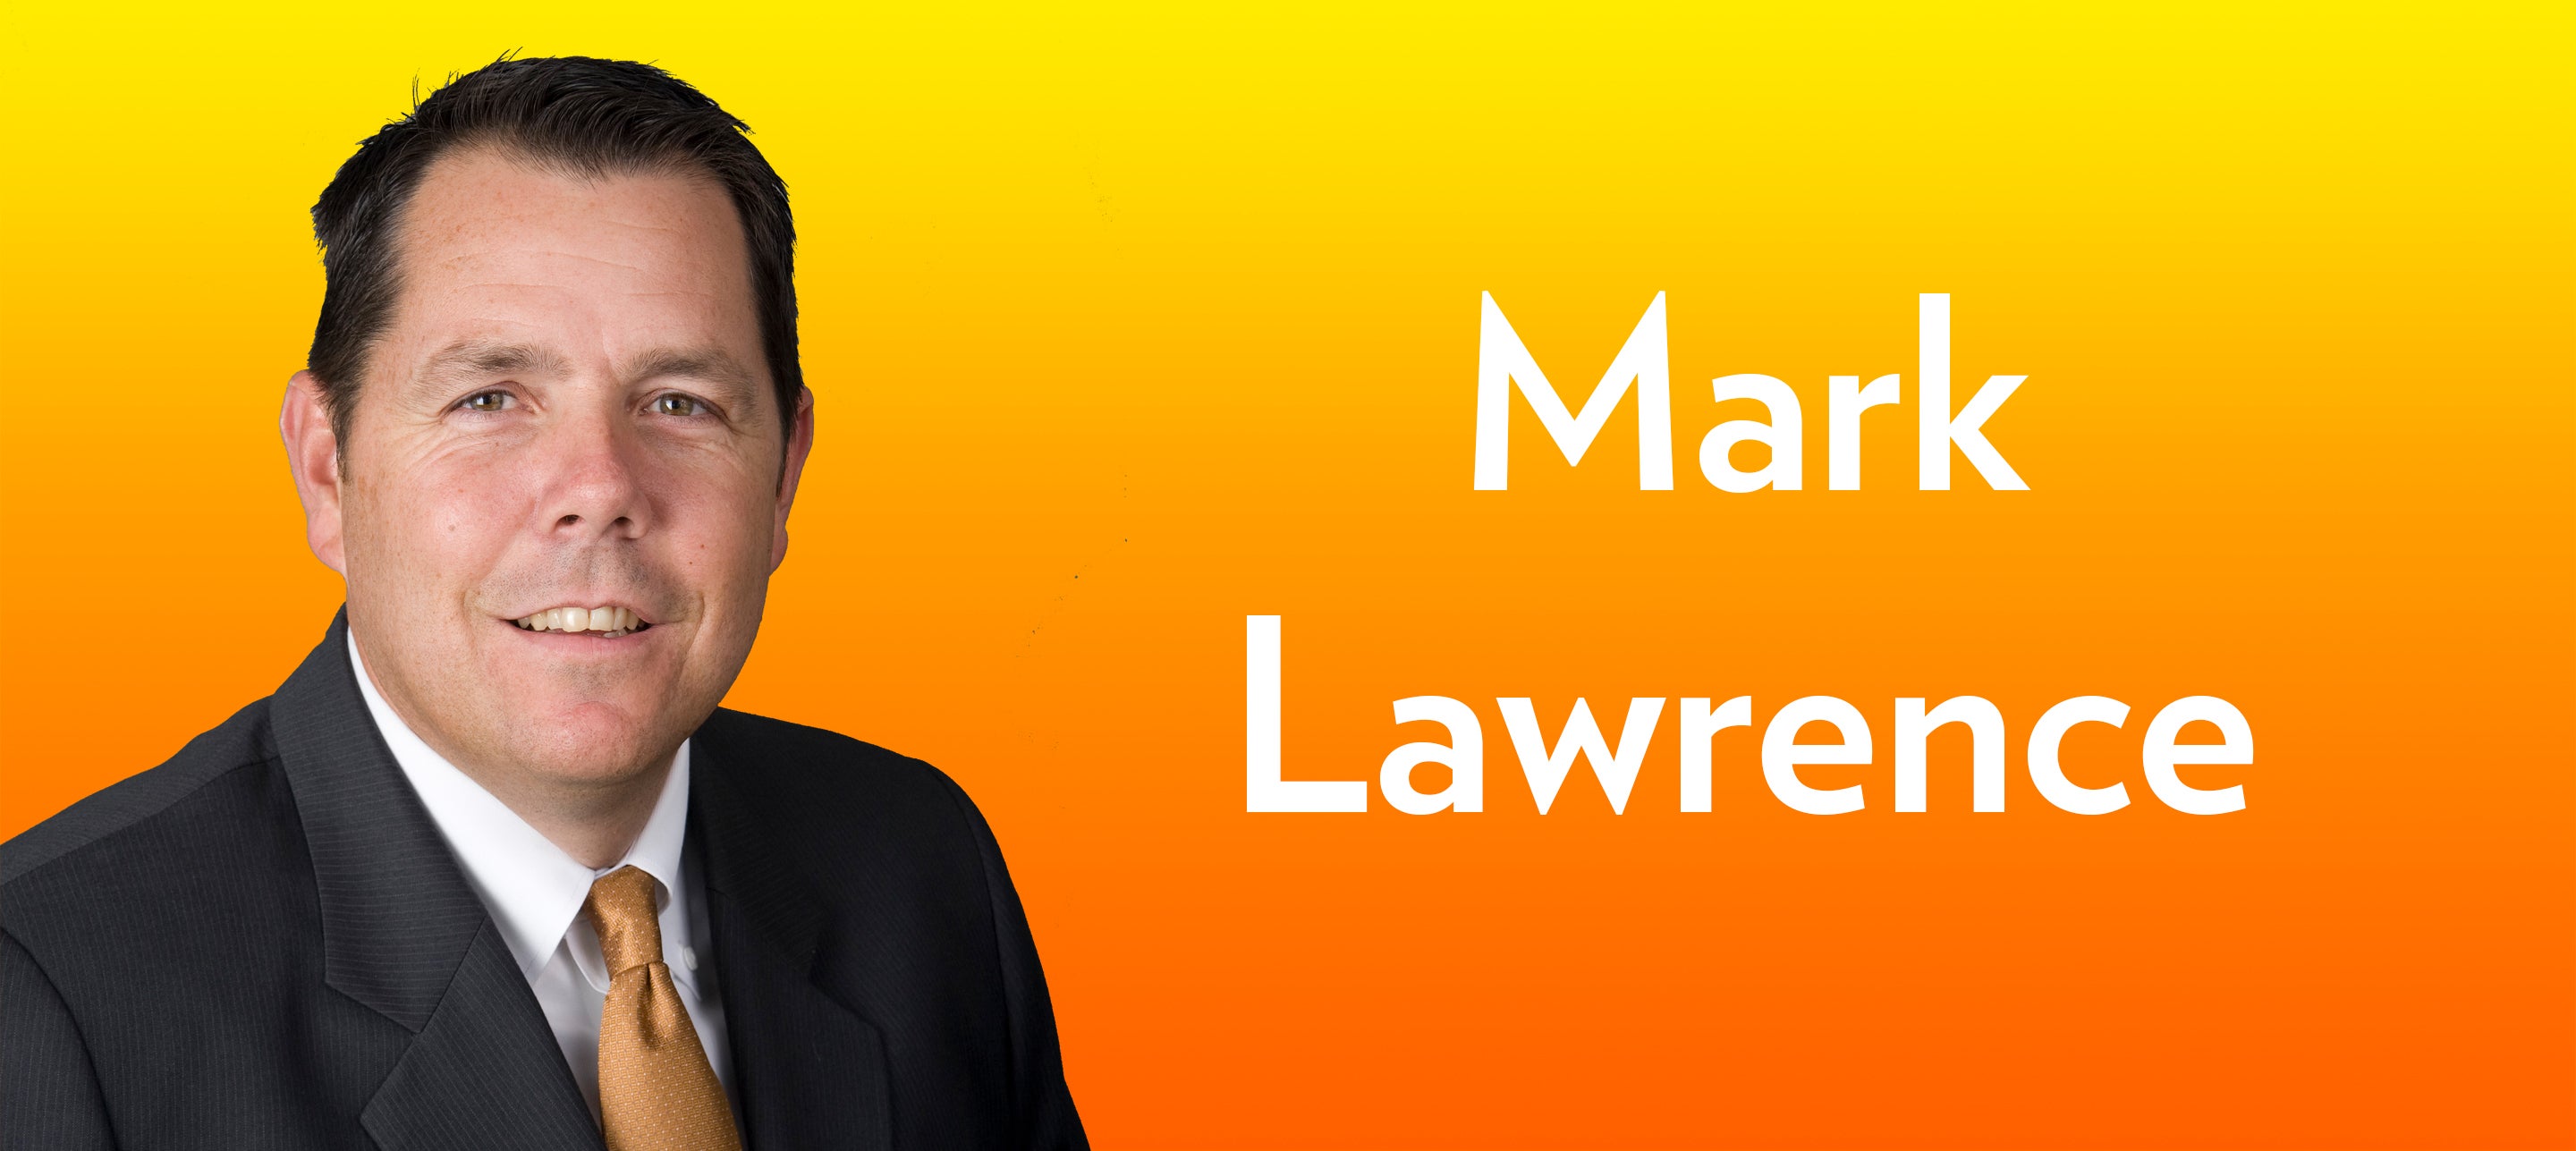 Mark Lawrence Nu Skin's new CFO